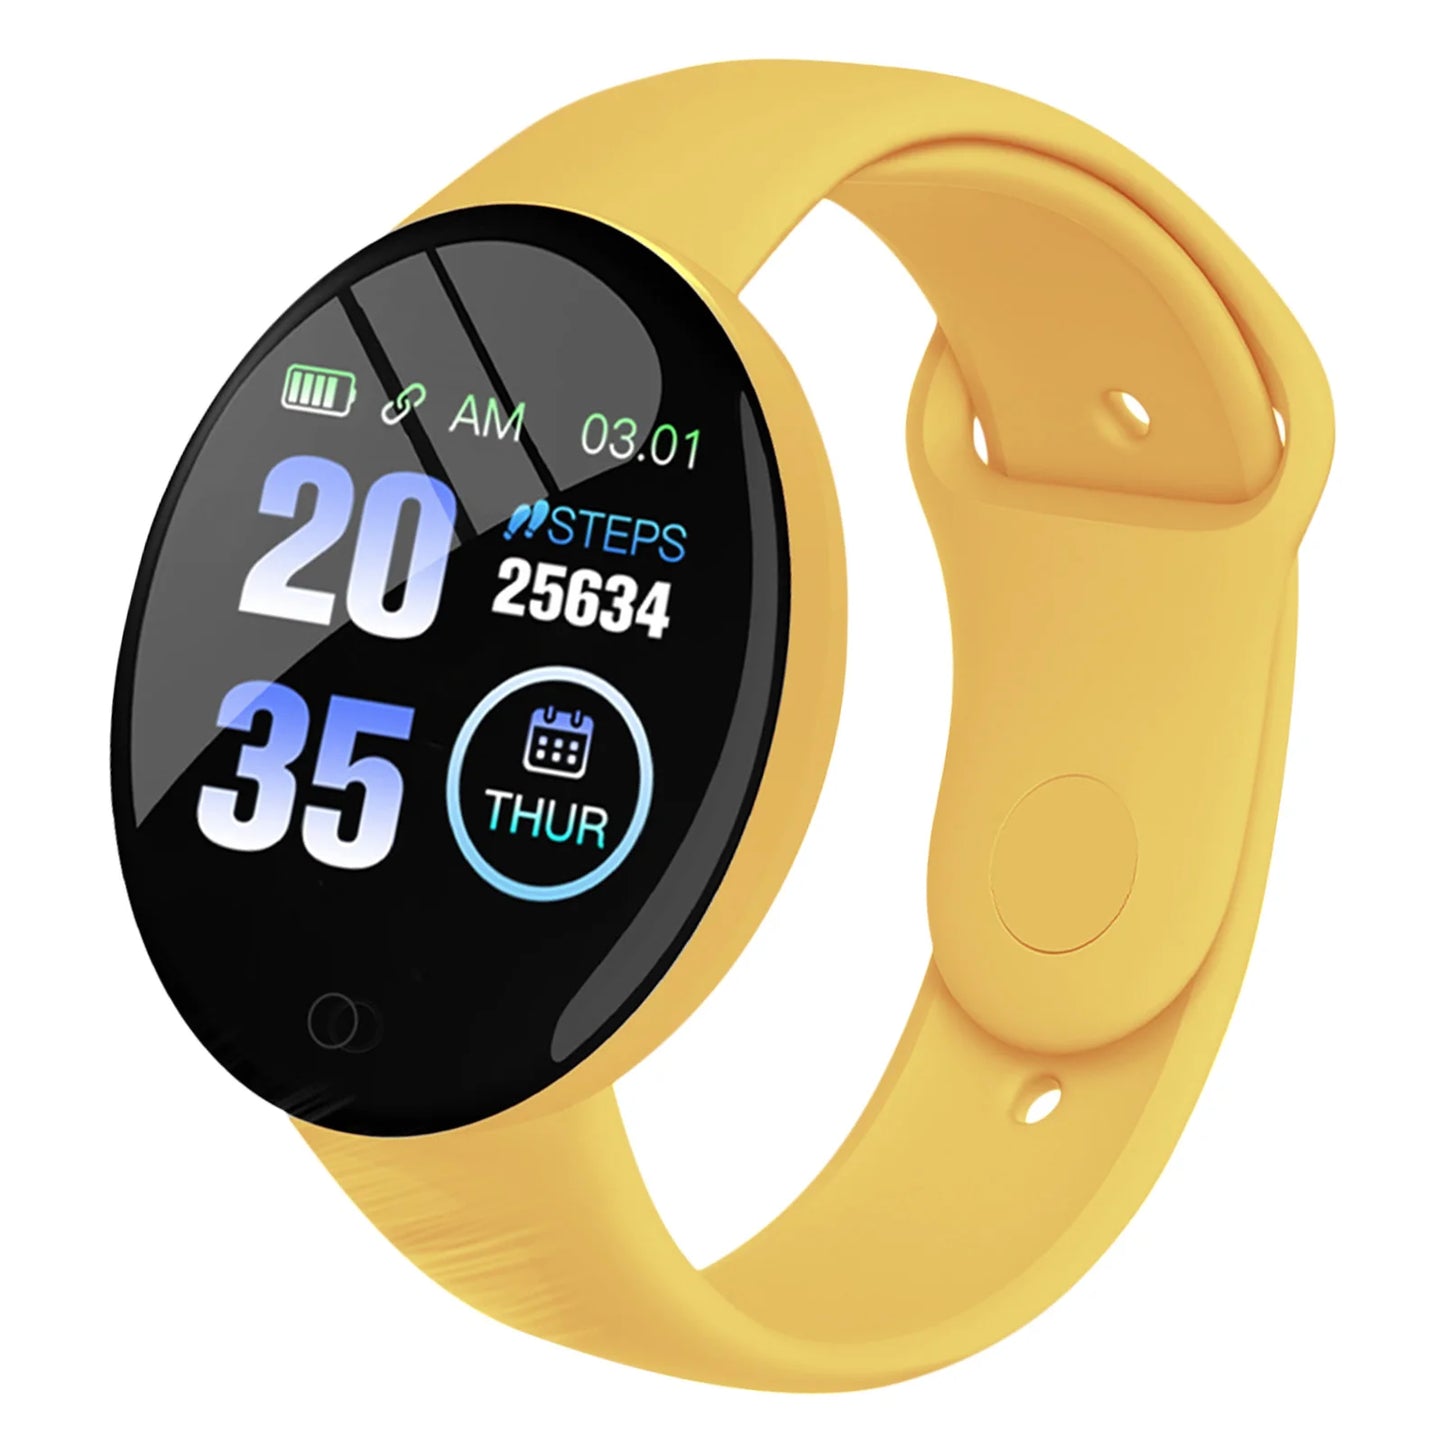 Smartwatch Digital Waterproof Heart Rate Monitor Fitness Tracker